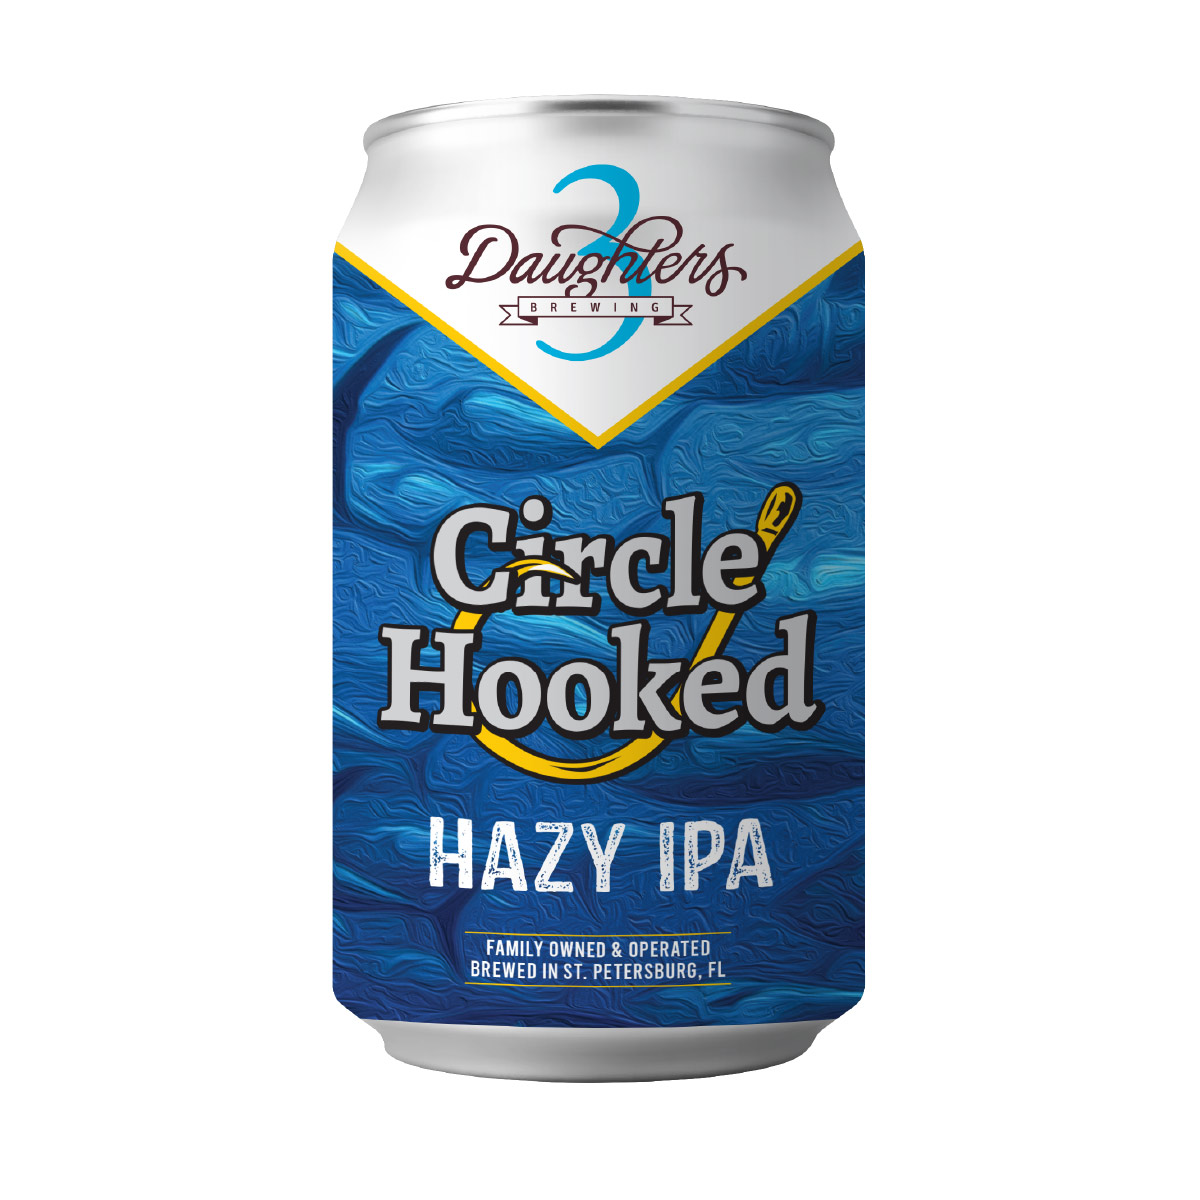 Circle Hooked Hazy IPA